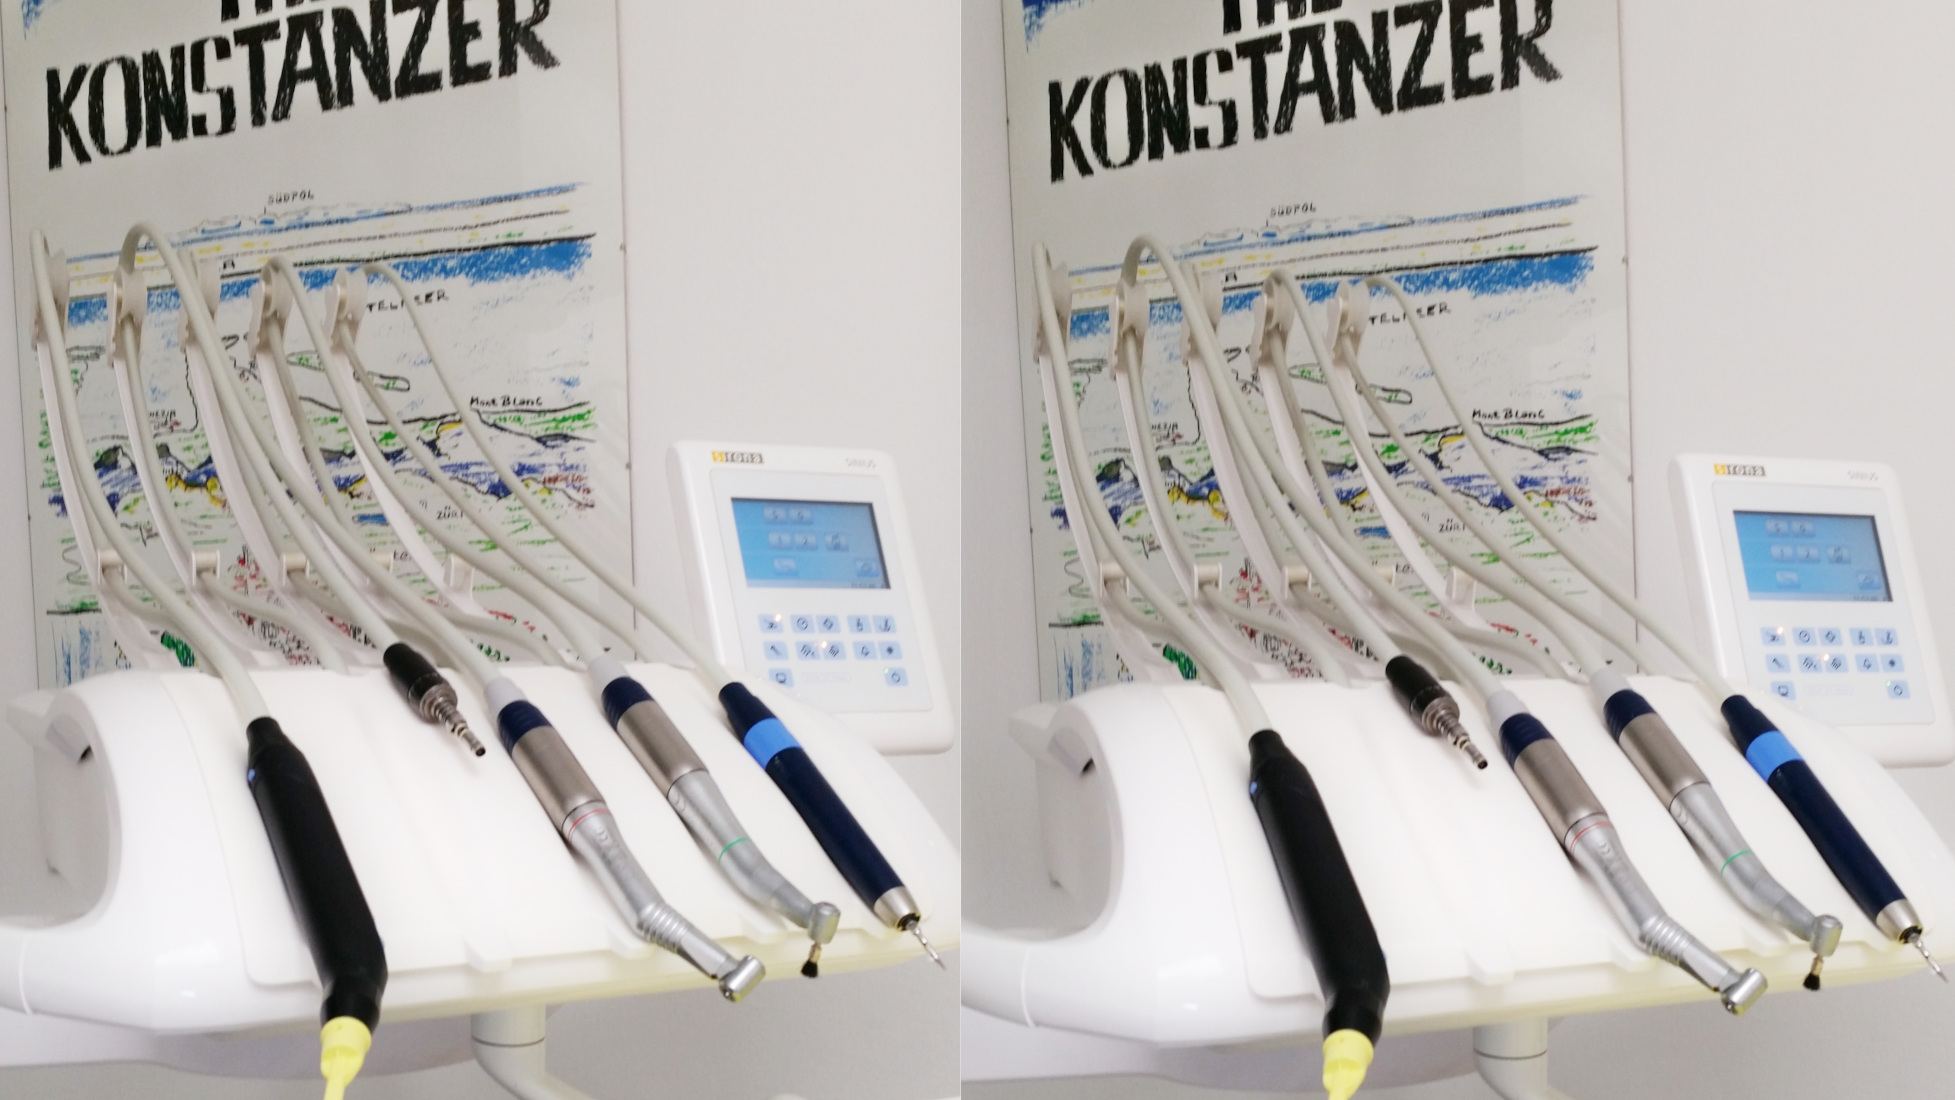 Zahnarztpraxis die Instrumente im Hintergrund ein gezeichnetes Bild "The Konstanzer" ganz oben der Südpol, davor die Alpen